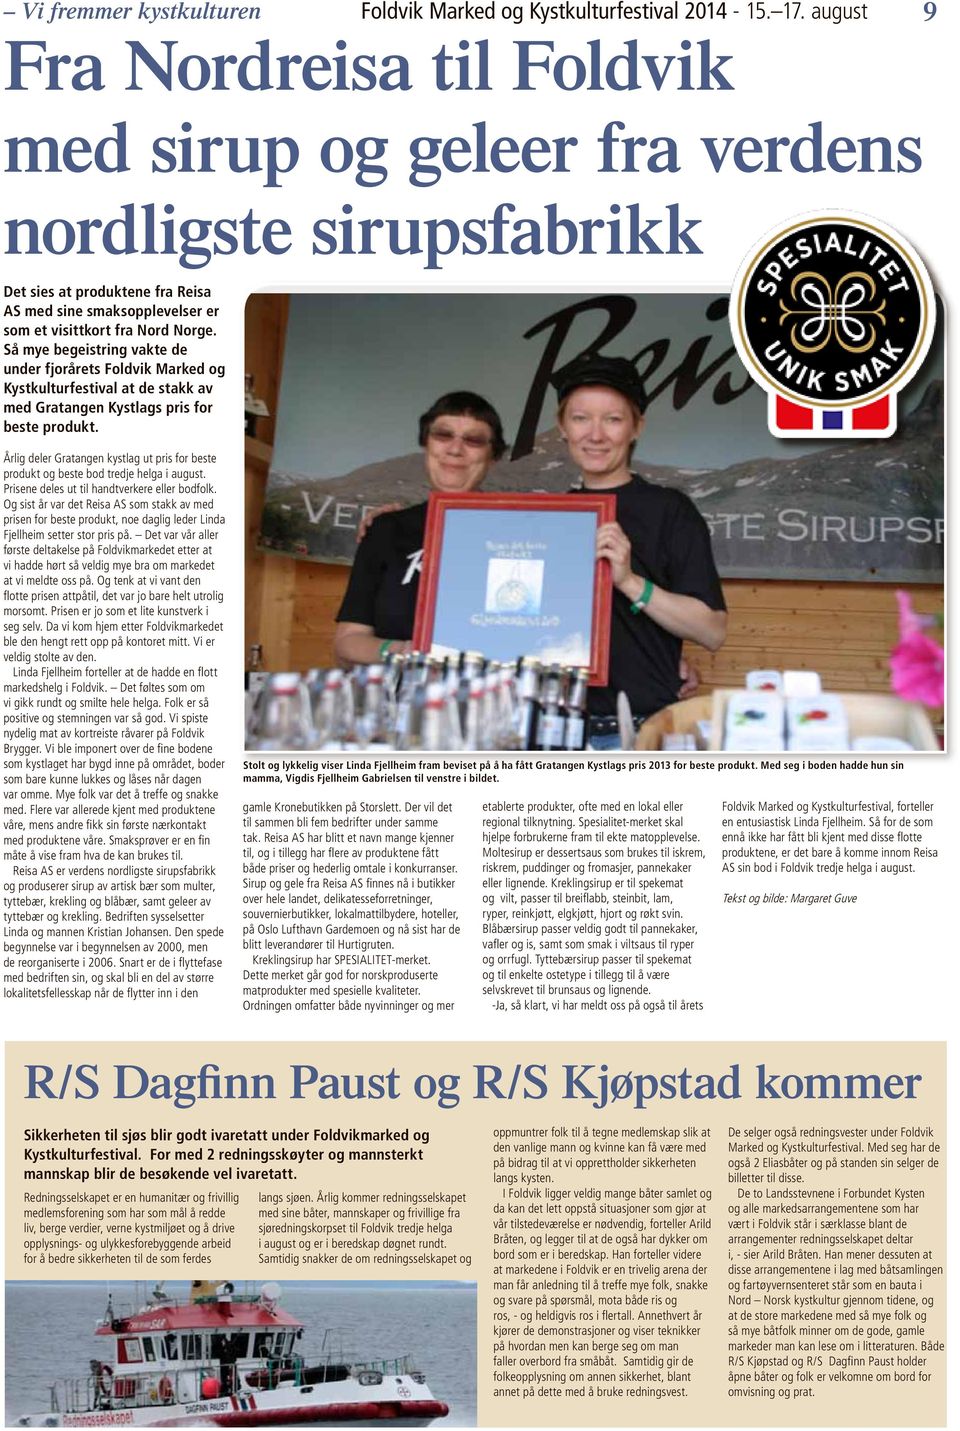 Så mye begeistring vakte de under fjorårets Foldvik Marked og Kystkulturfestival at de stakk av med Gratangen Kystlags pris for beste produkt.